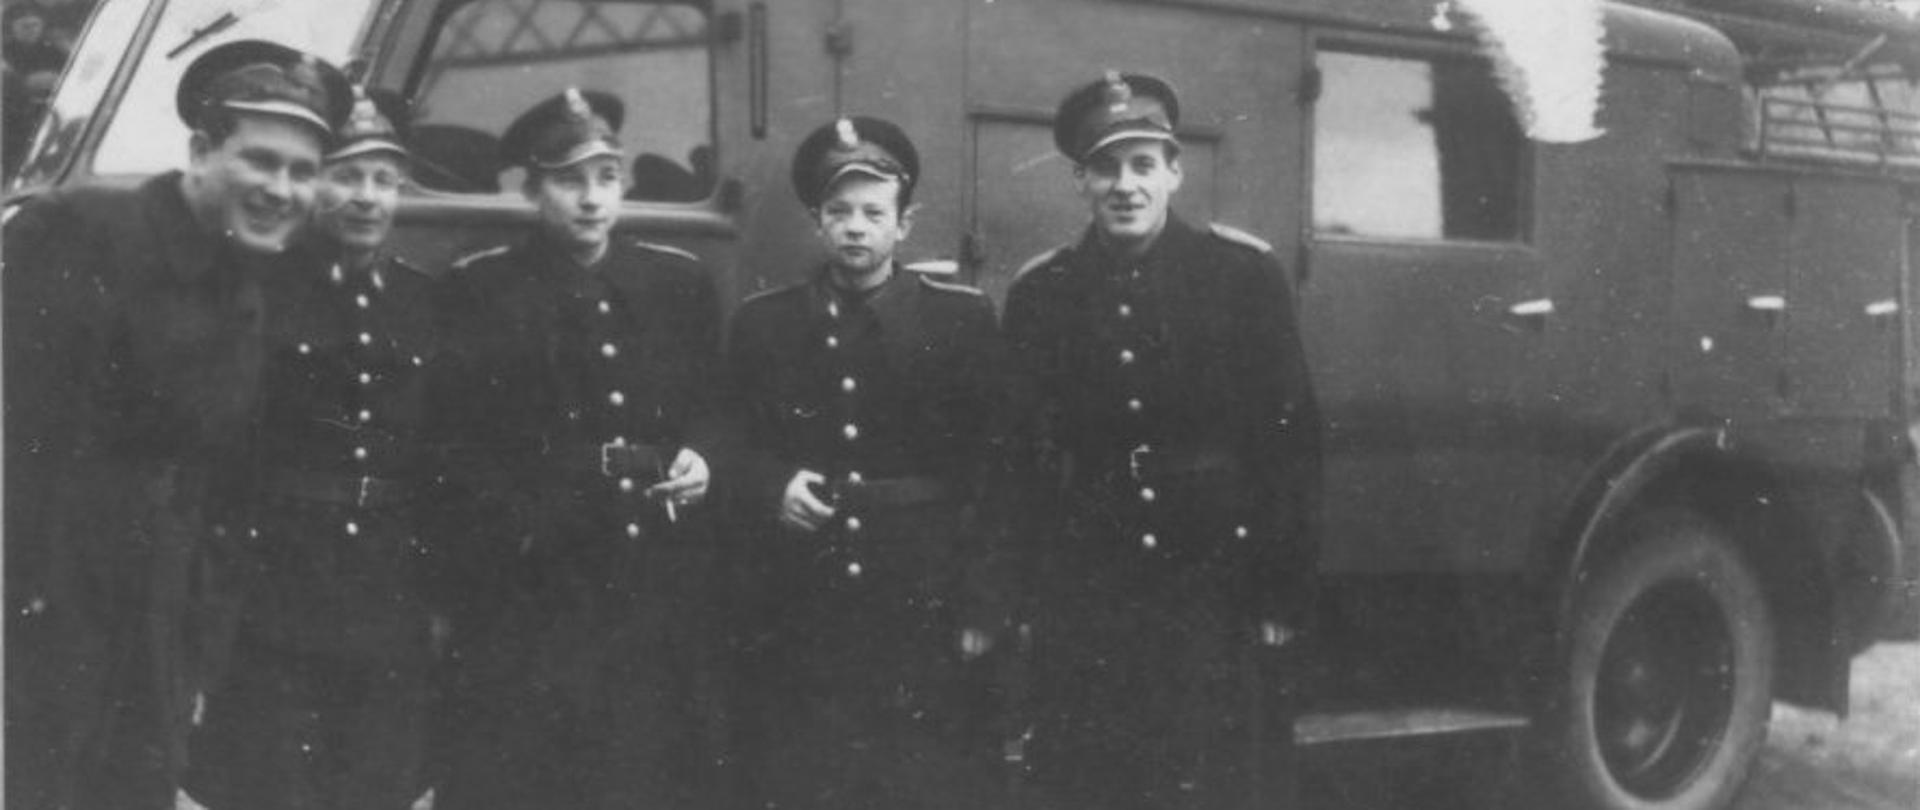 Stare czarno białe zdjęcie.Strażacy w mundurach przy samochodzie pożarniczym. 